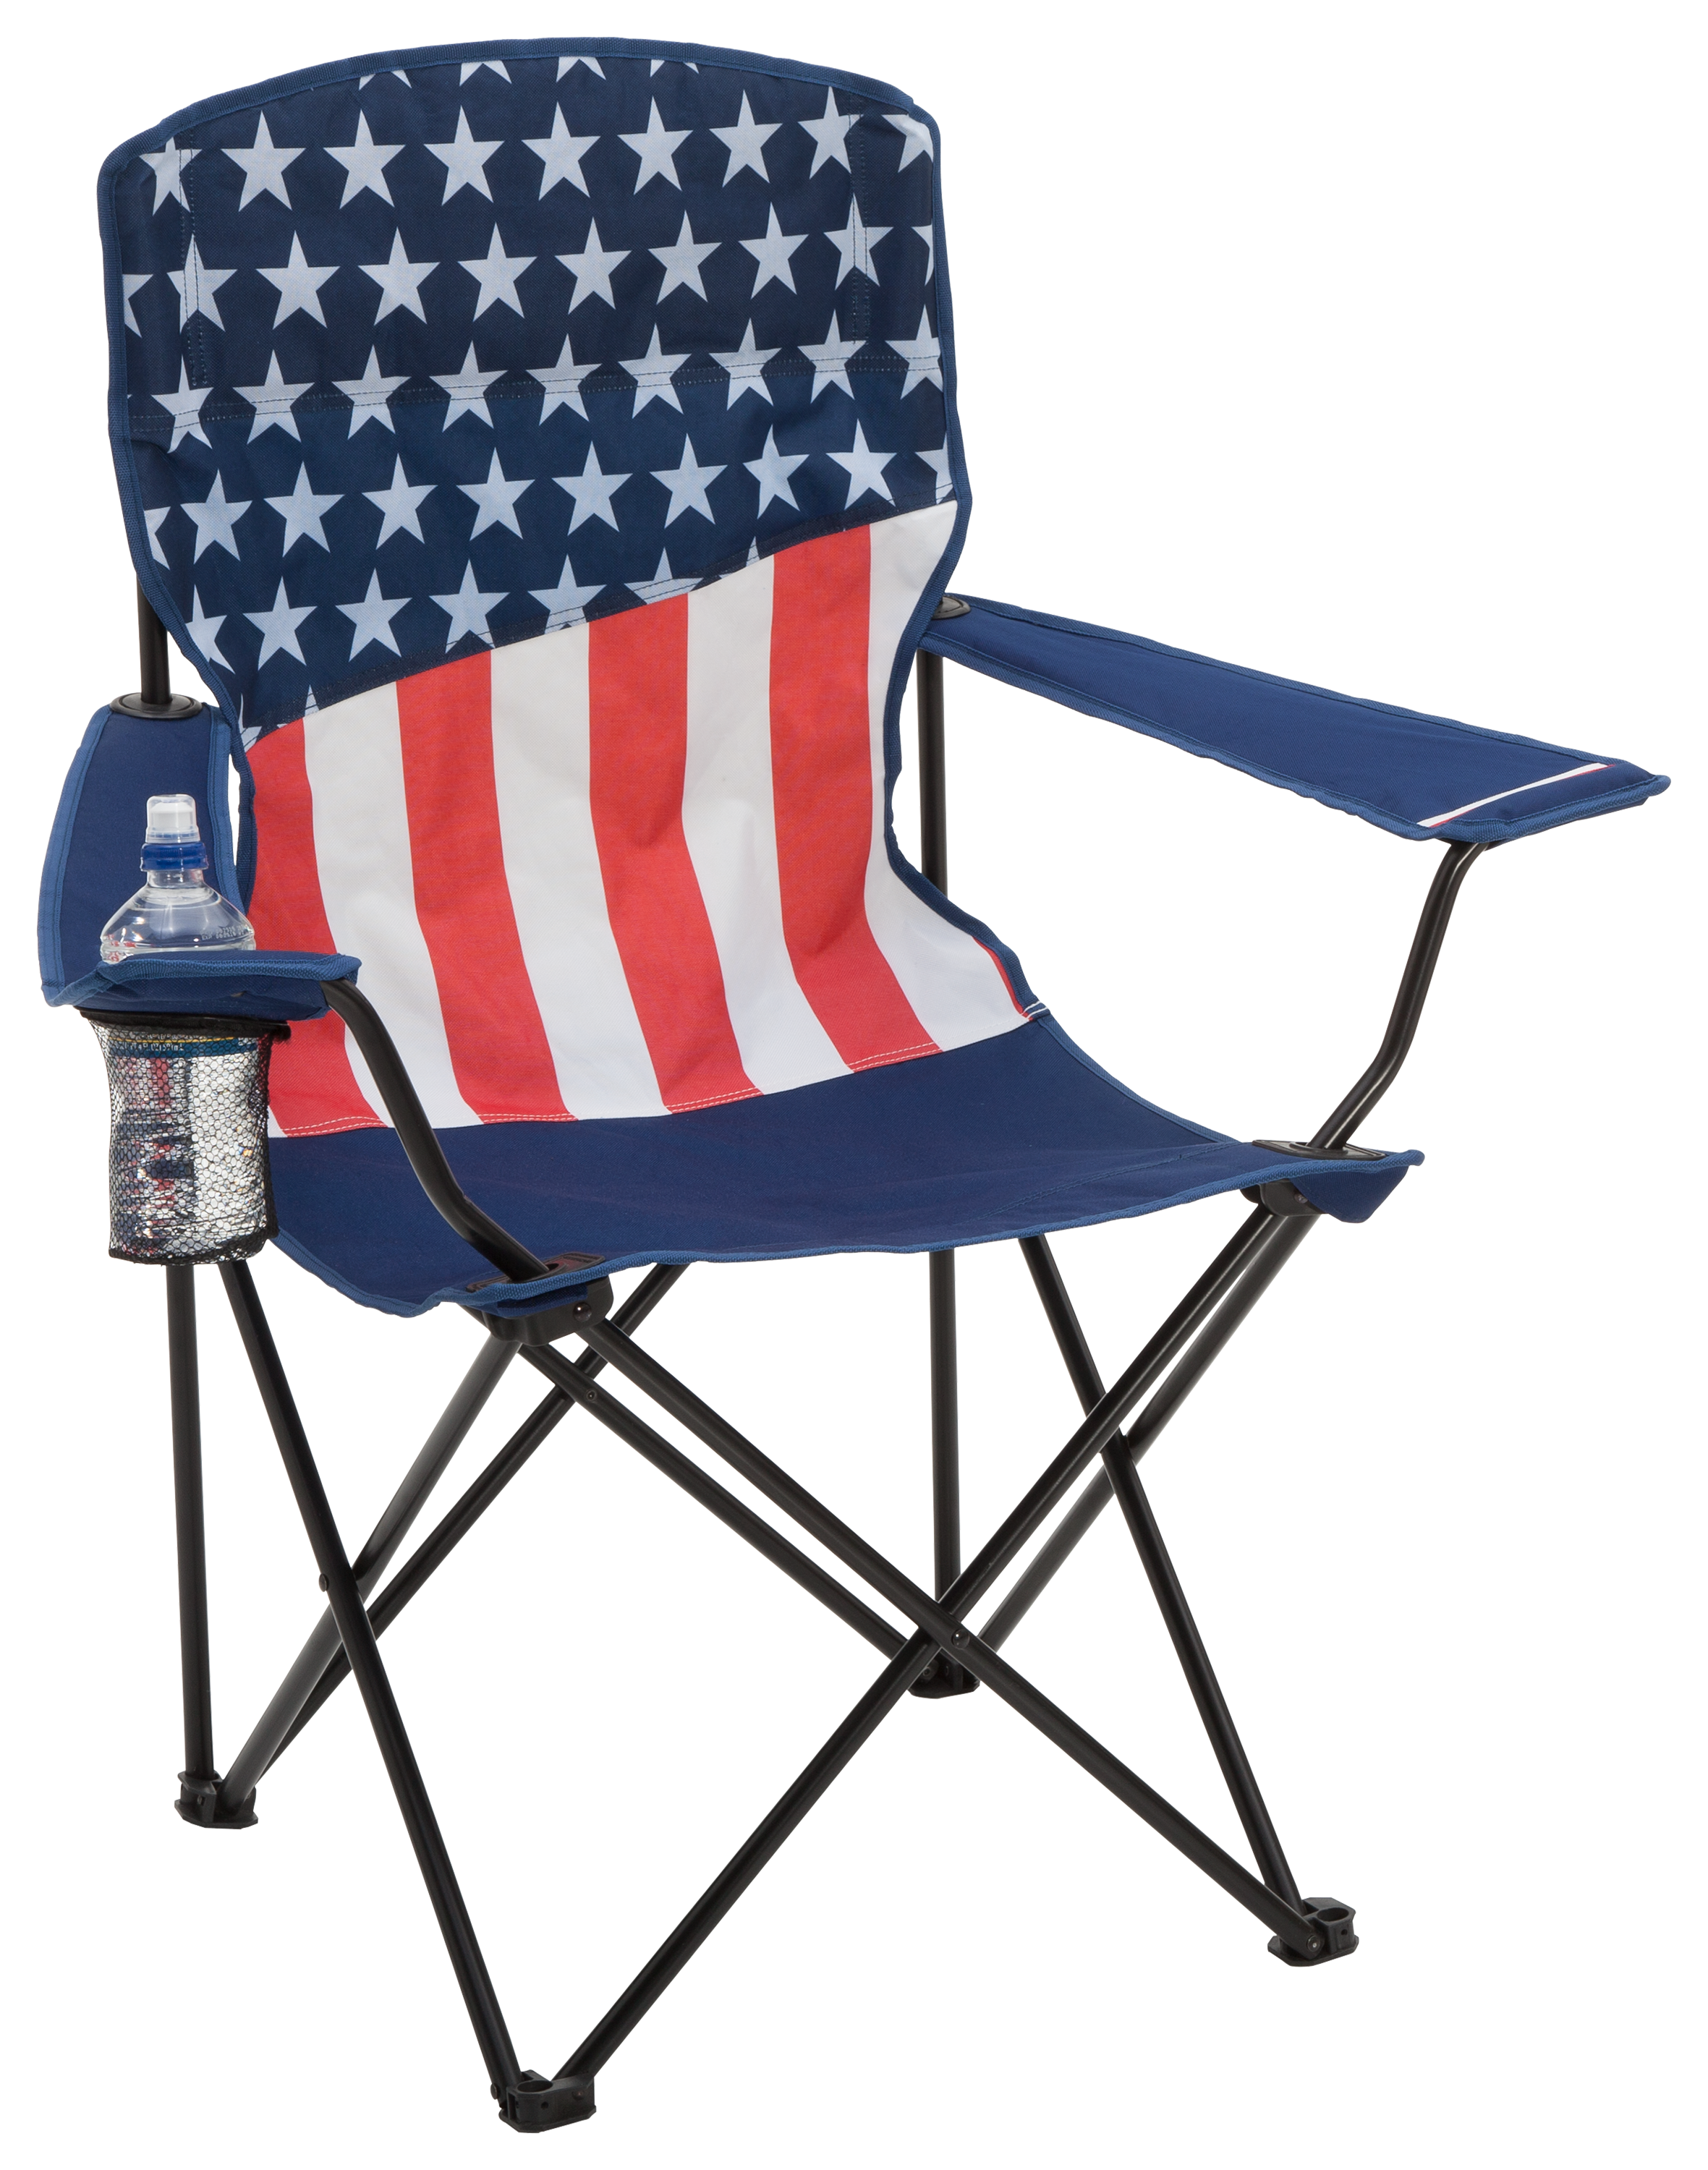 Bass Pro Shops Patriotic Flag Chair | Bass Pro Shops